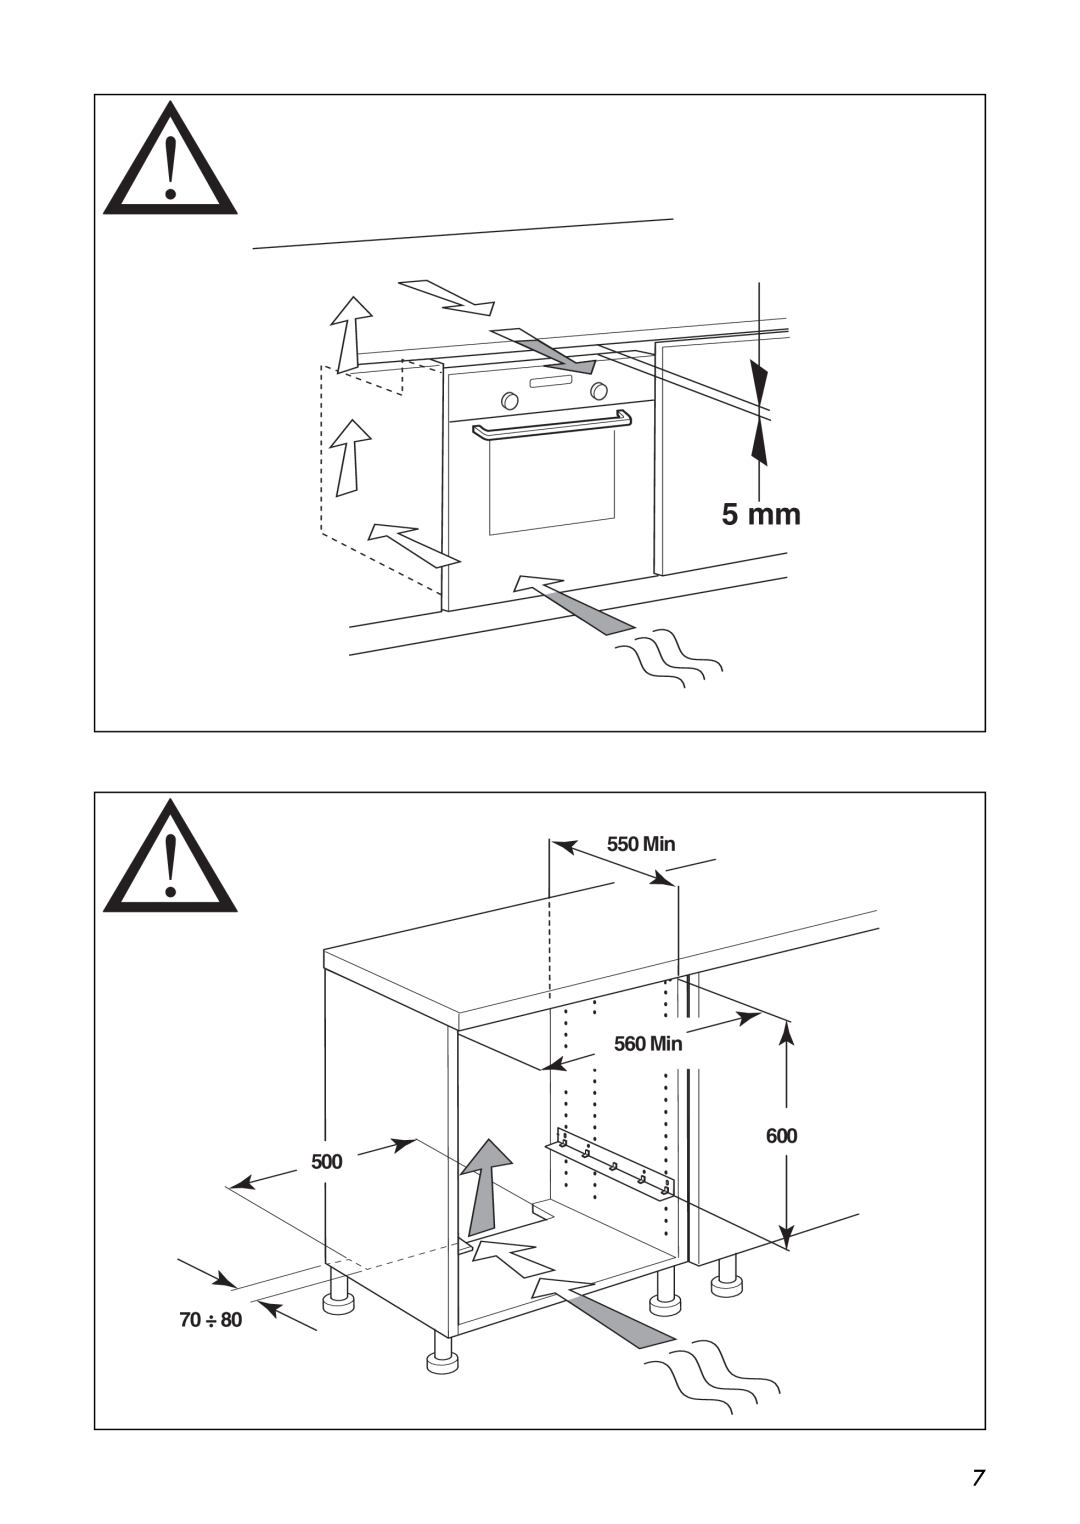 IKEA OV9 manual 550 Min, 560 Min, 5 mm, 70 ÷ 